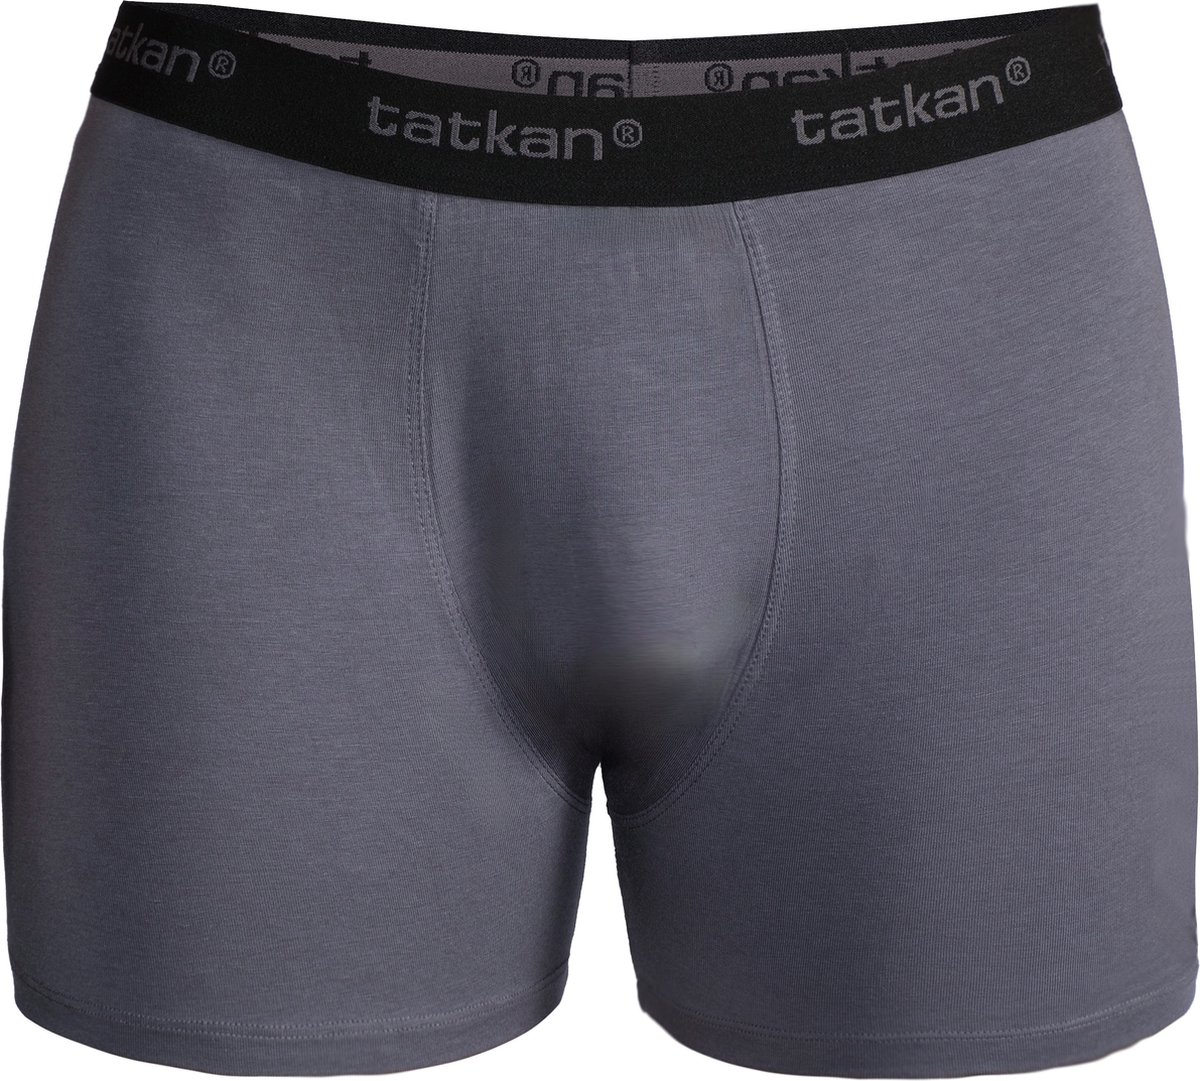 Underwear Heren Boxershorts - Modal Heren Ondergoed - Modal Boxershorts voor Mannen - Heren Onderbroeken - Normale pijp - Maat XL - 6-pack - Zwart, Donker Grijs, Marine, Bordeaux, Licht grijs